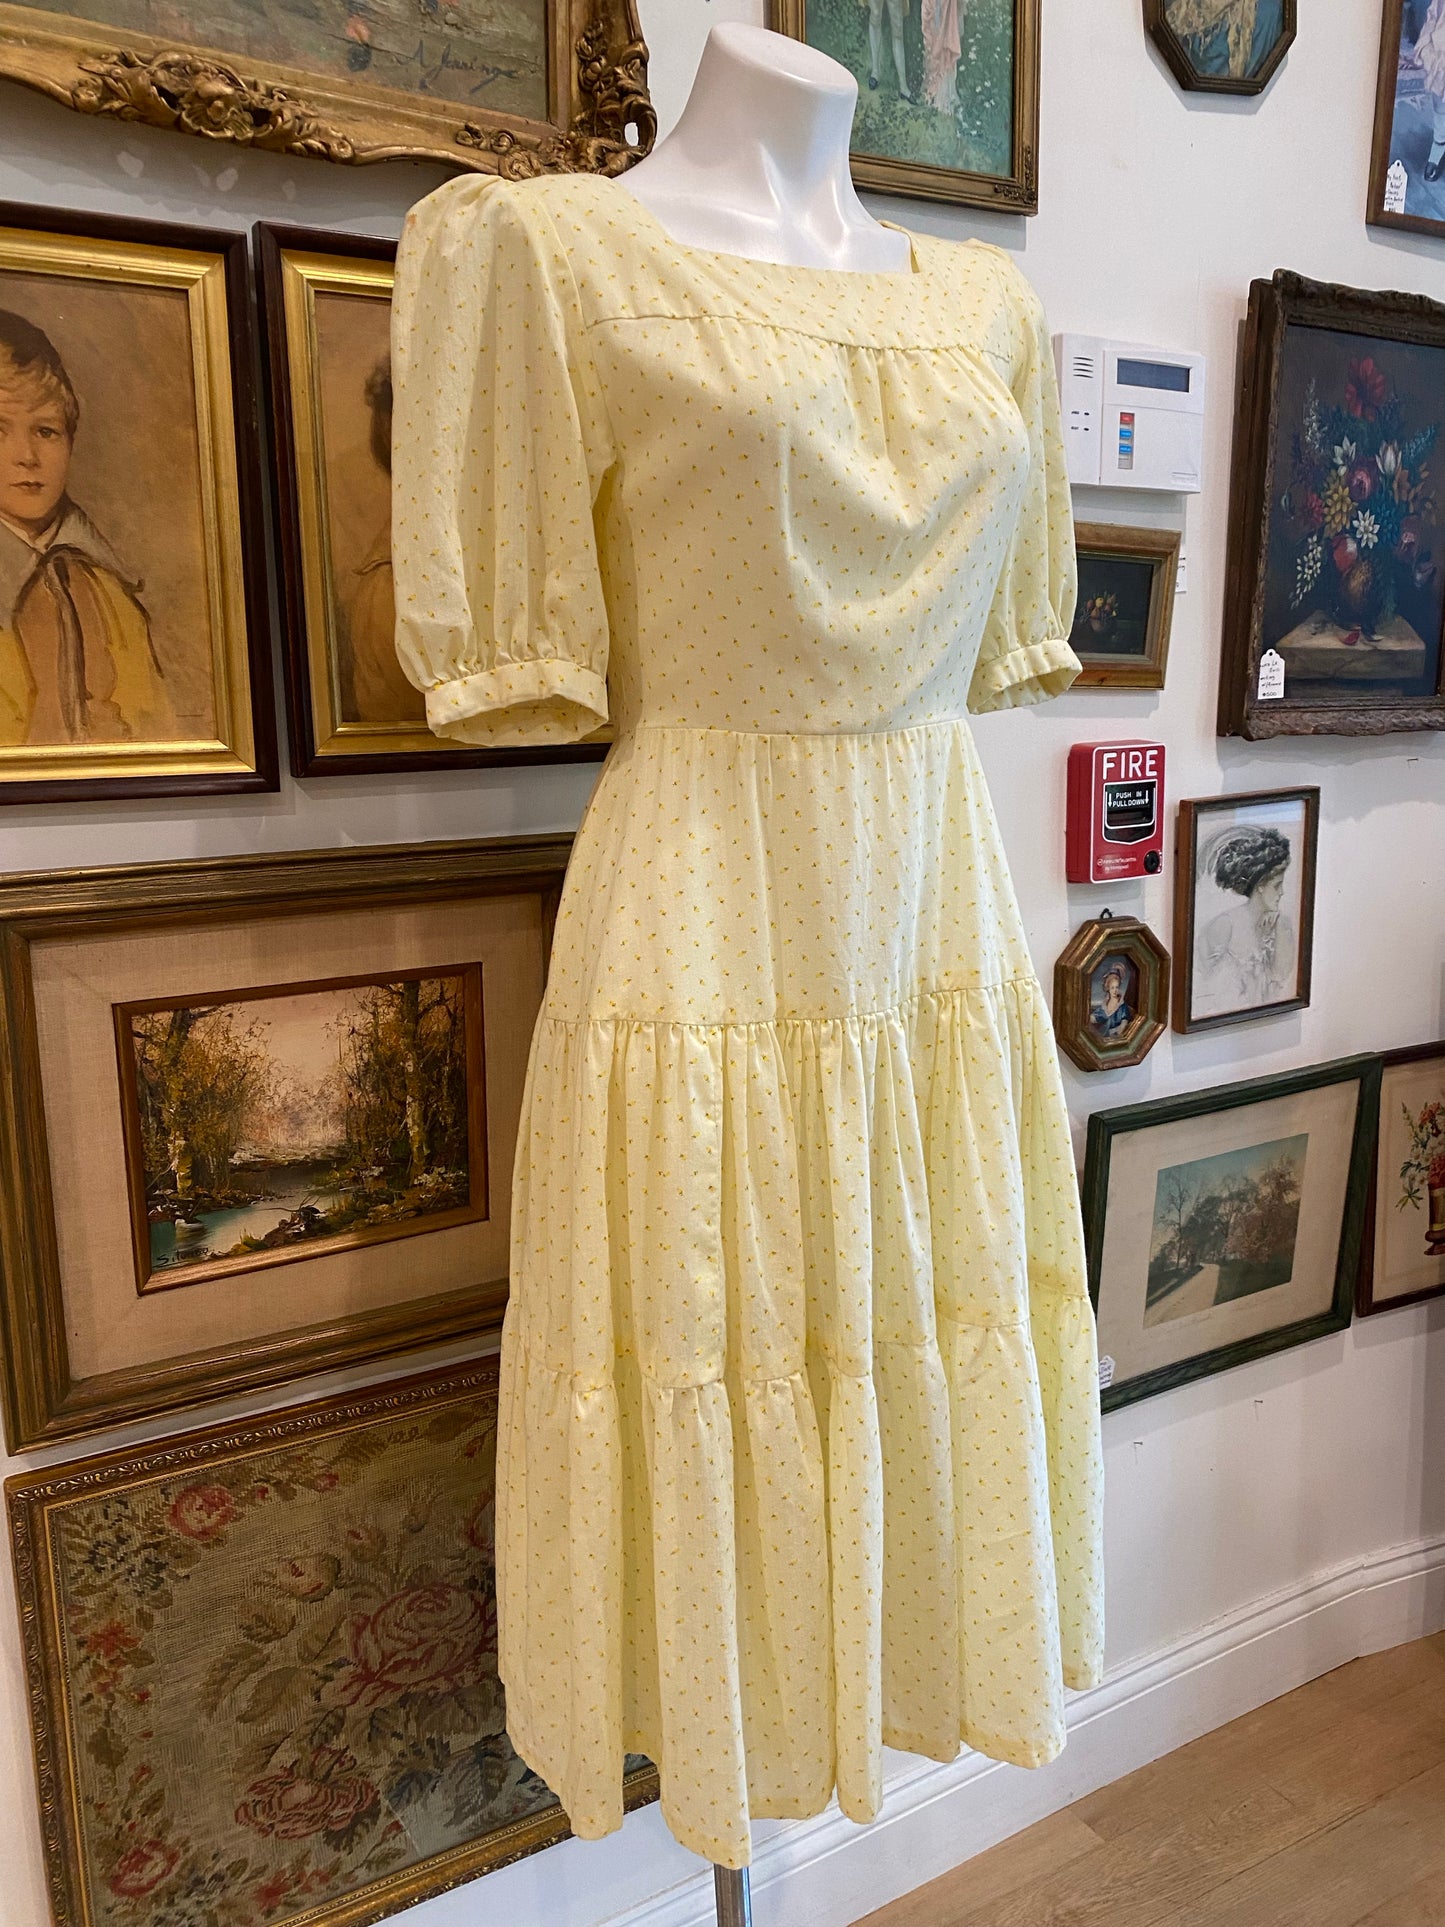 The Betsy Dress, 1950's